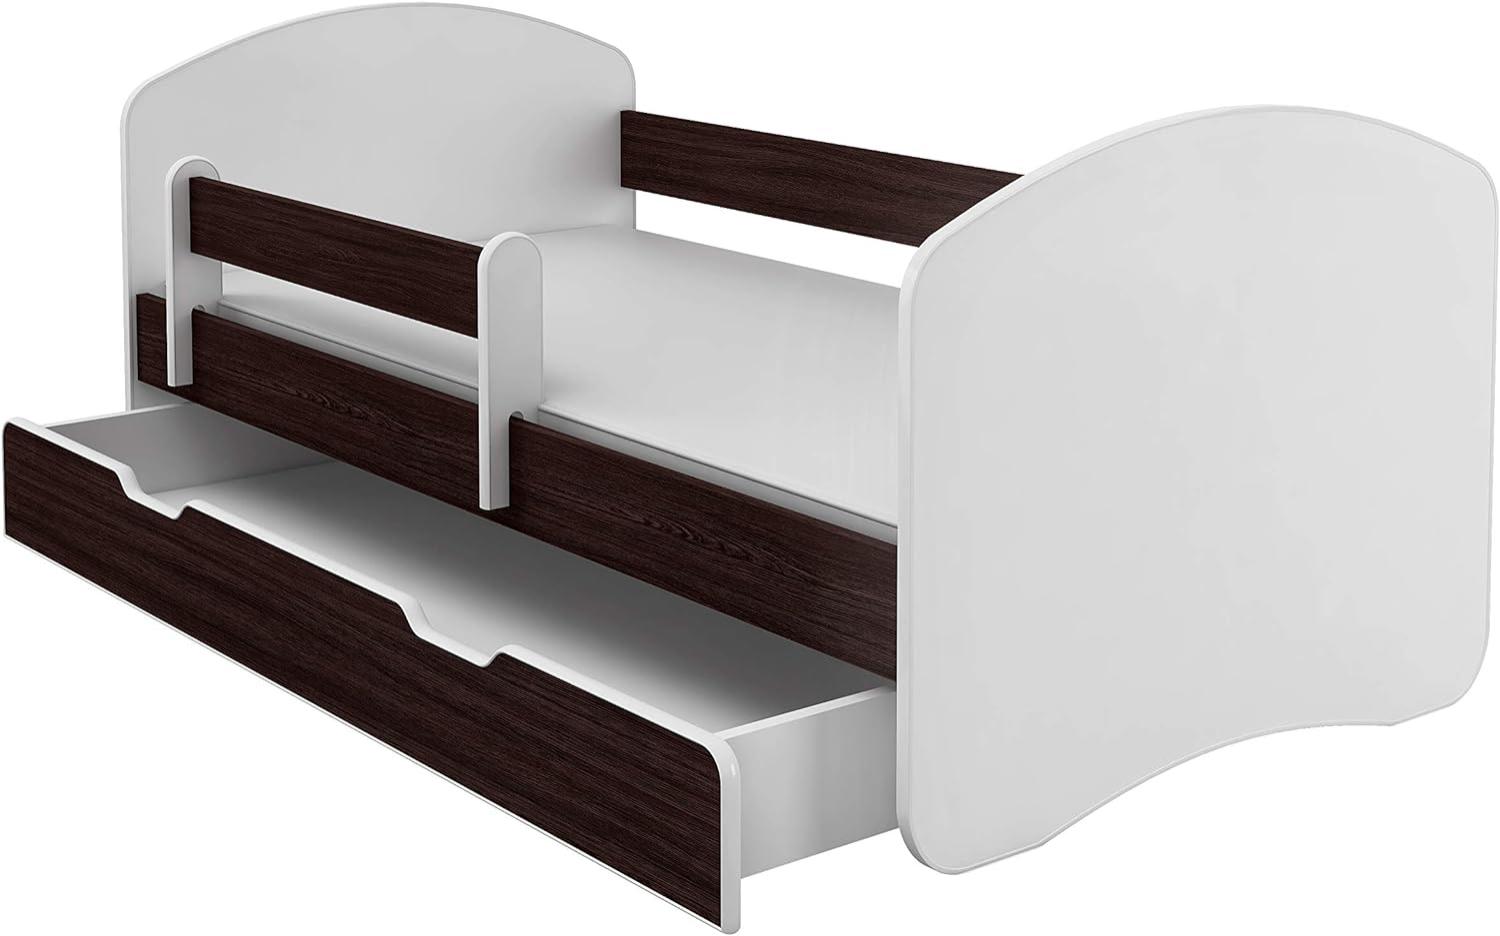 Kinderbett Jugendbett mit einer Schublade und Matratze Weiß ACMA II (160x80 cm + Schublade, Holz Wenge) Bild 1